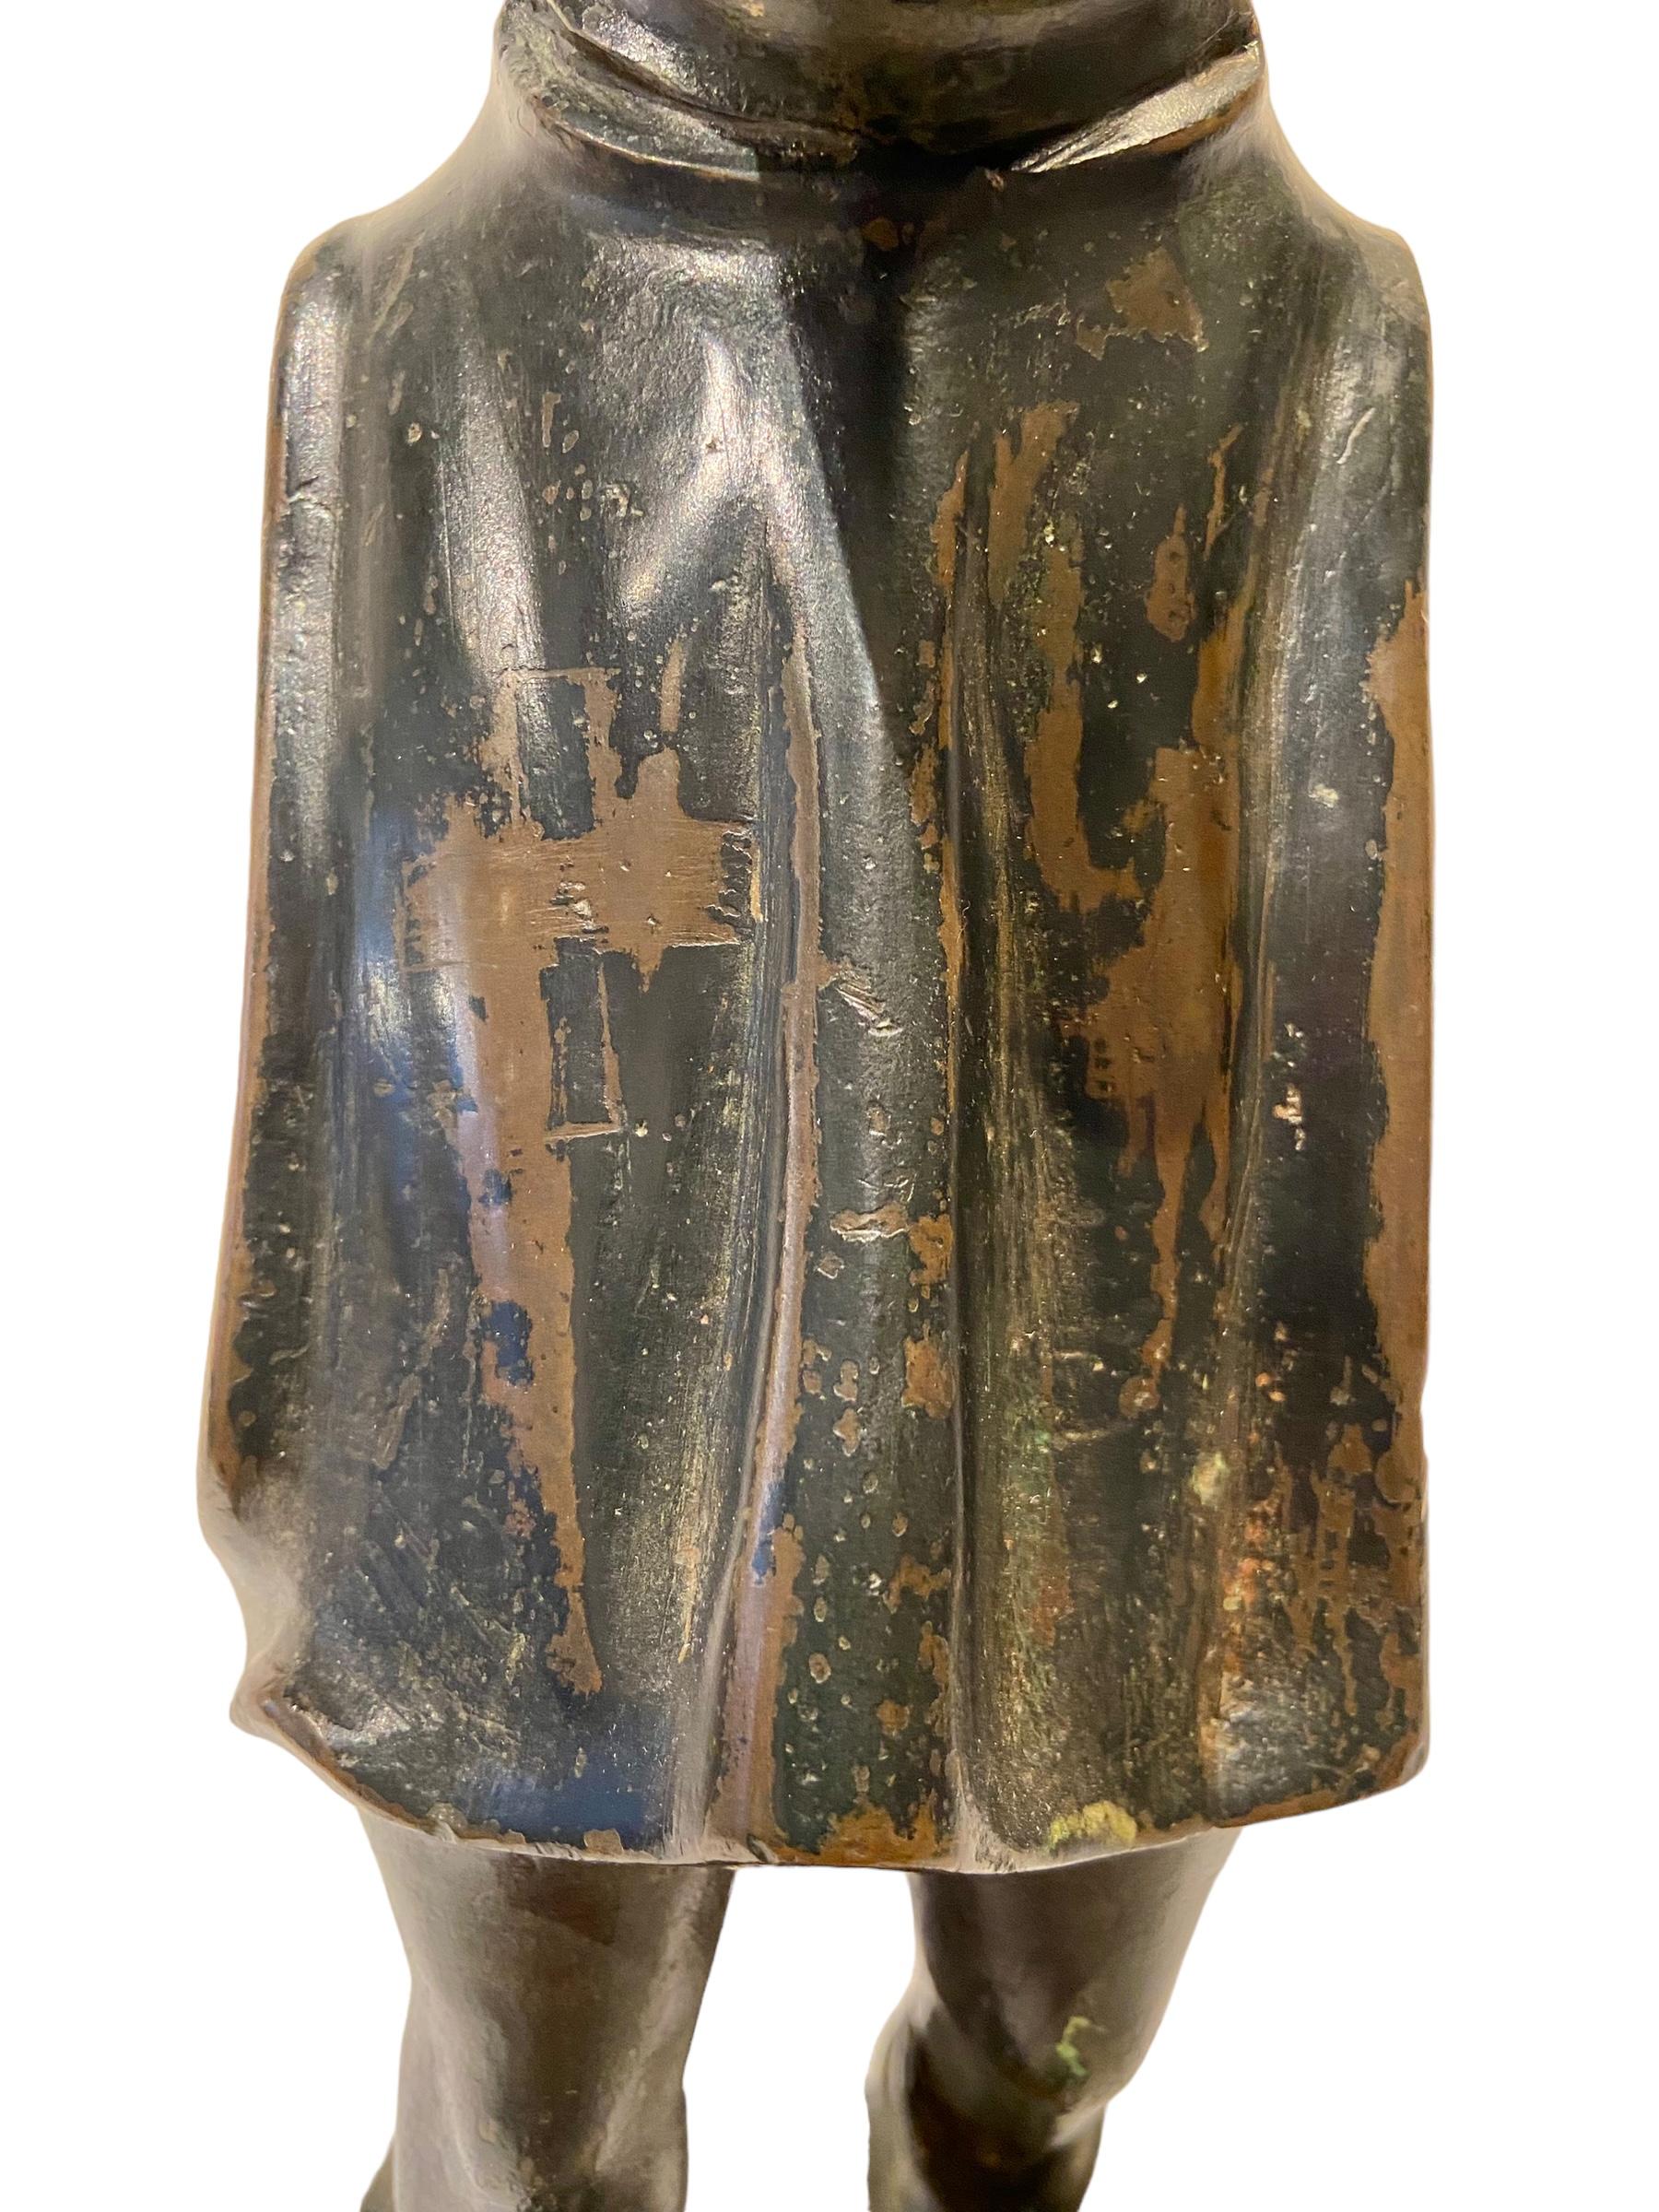 Eine wilde oder volkstümliche Figur aus Bronze auf einem Sockel aus Blaustein (neueren Datums).
Die Figur mit dem langen Spitzbart trägt einen Umhang mit Kapuze. 
Davor steht ein Kreuz. In seinen Händen hält er eine Keule. Wahrscheinlich